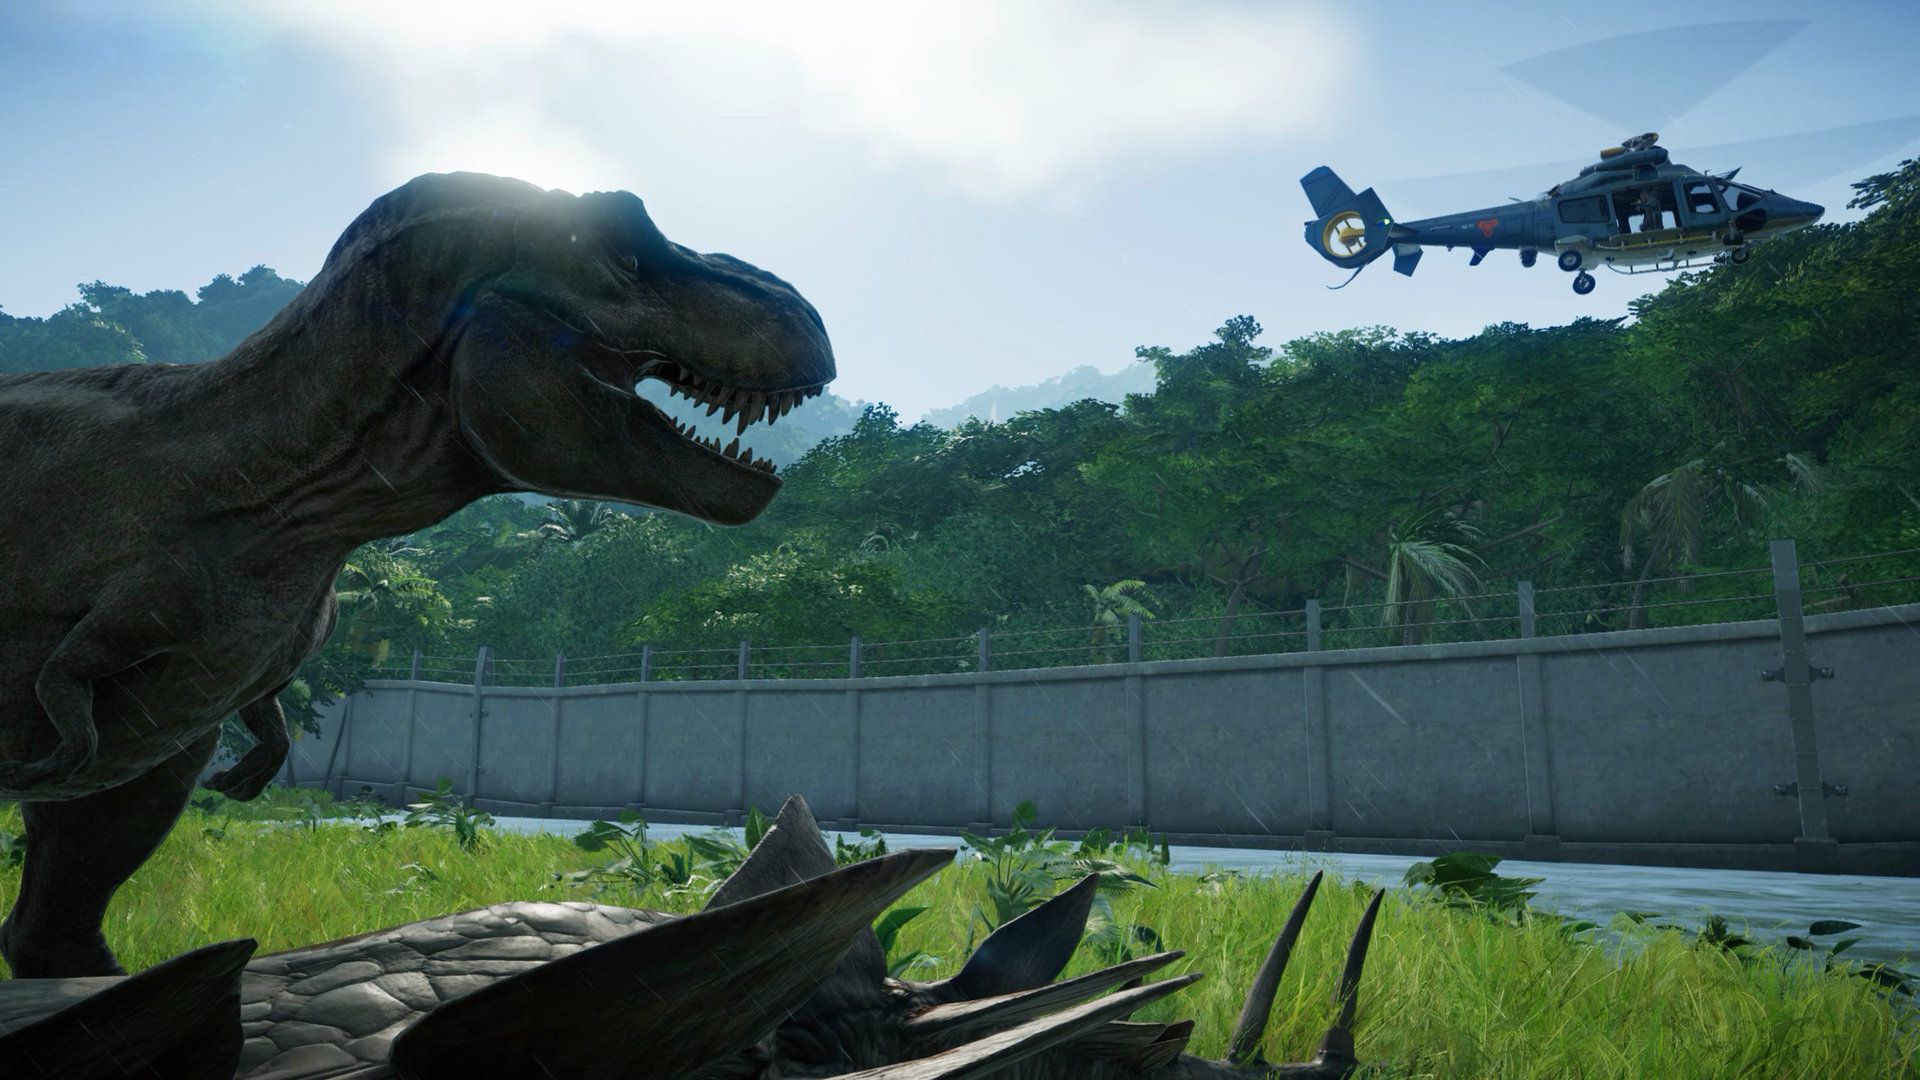 Jurassic World games - T-レックスが草むらの端にあるフェンスの上、うっそうとしたジャングルの中からヘリコプターを見ています。